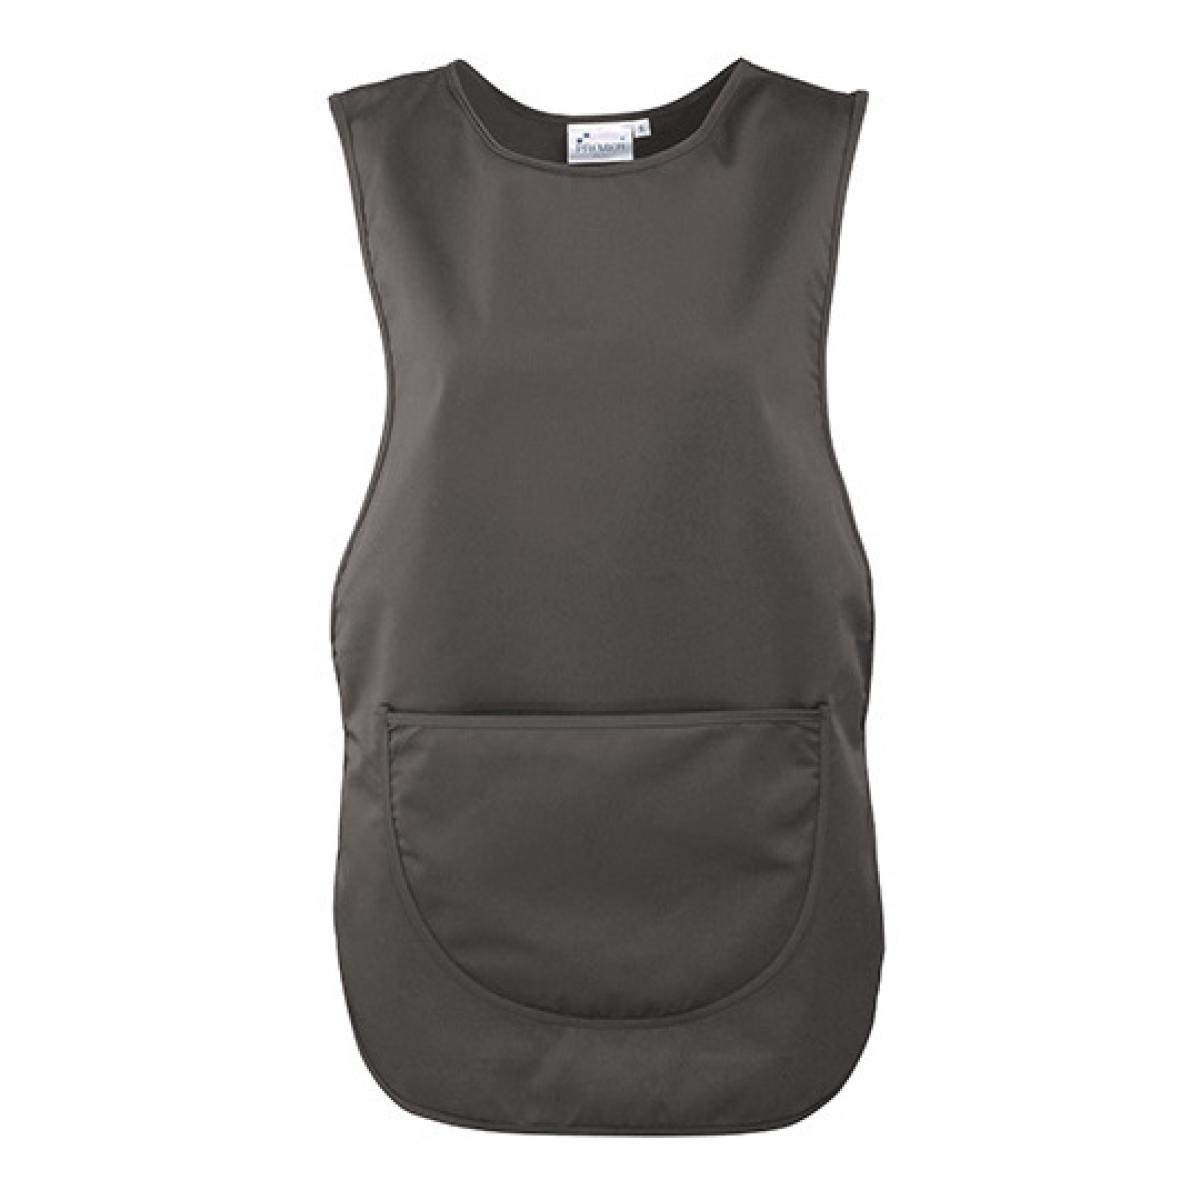 Hersteller: Premier Workwear Herstellernummer: PR171 Artikelbezeichnung: Women`s Pocket Tabard - Waschbar bis 60 °C Farbe: Dark Grey (ca. Pantone 431)